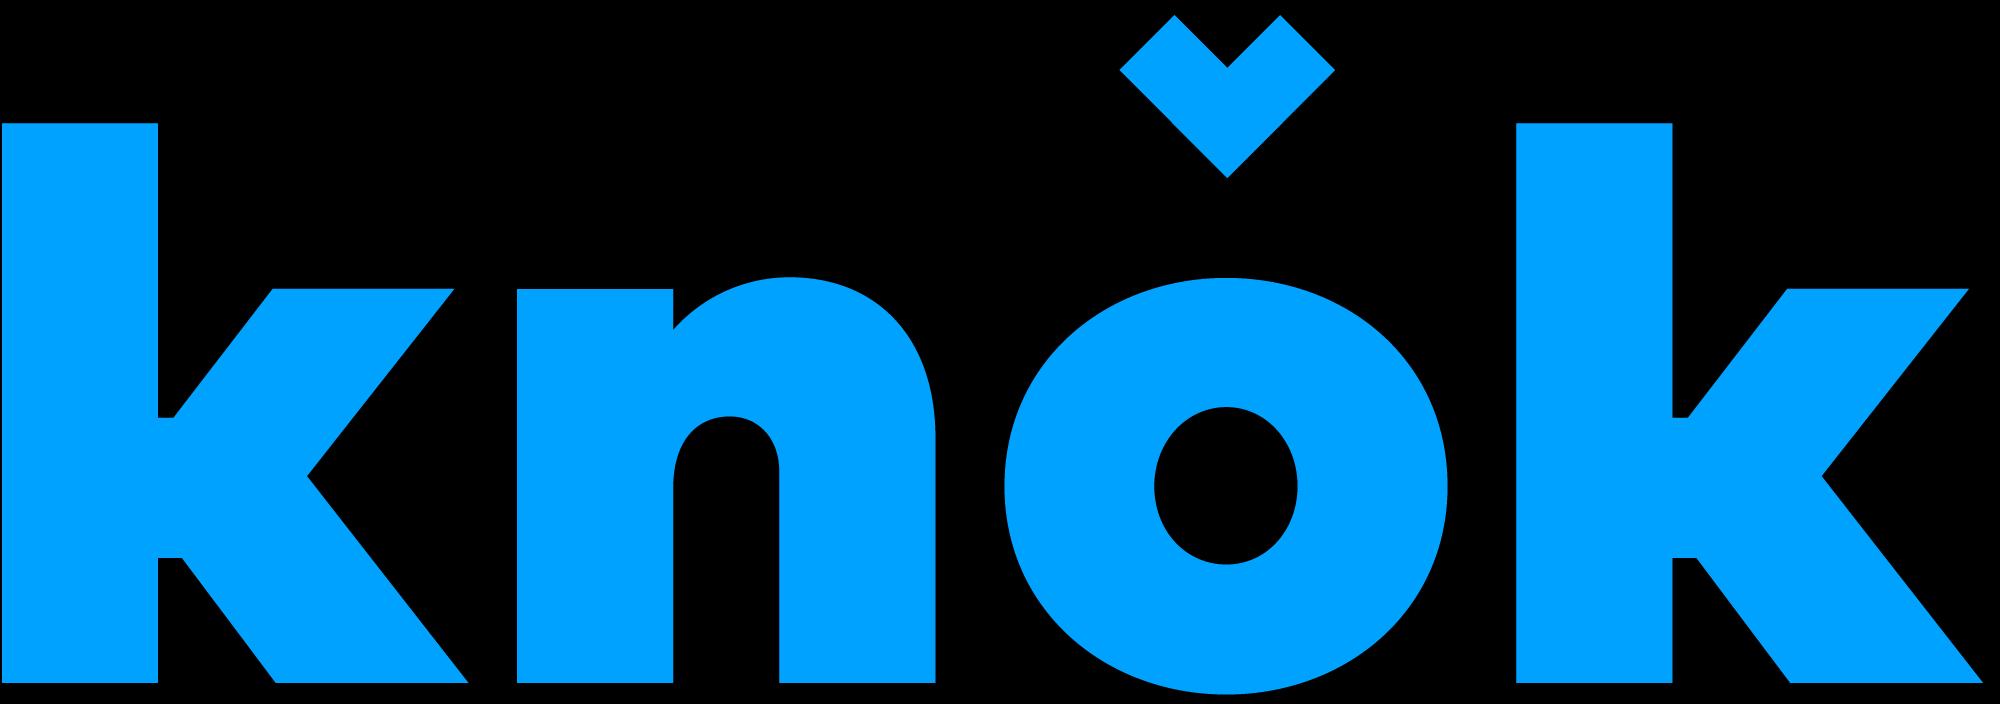 knok_logo